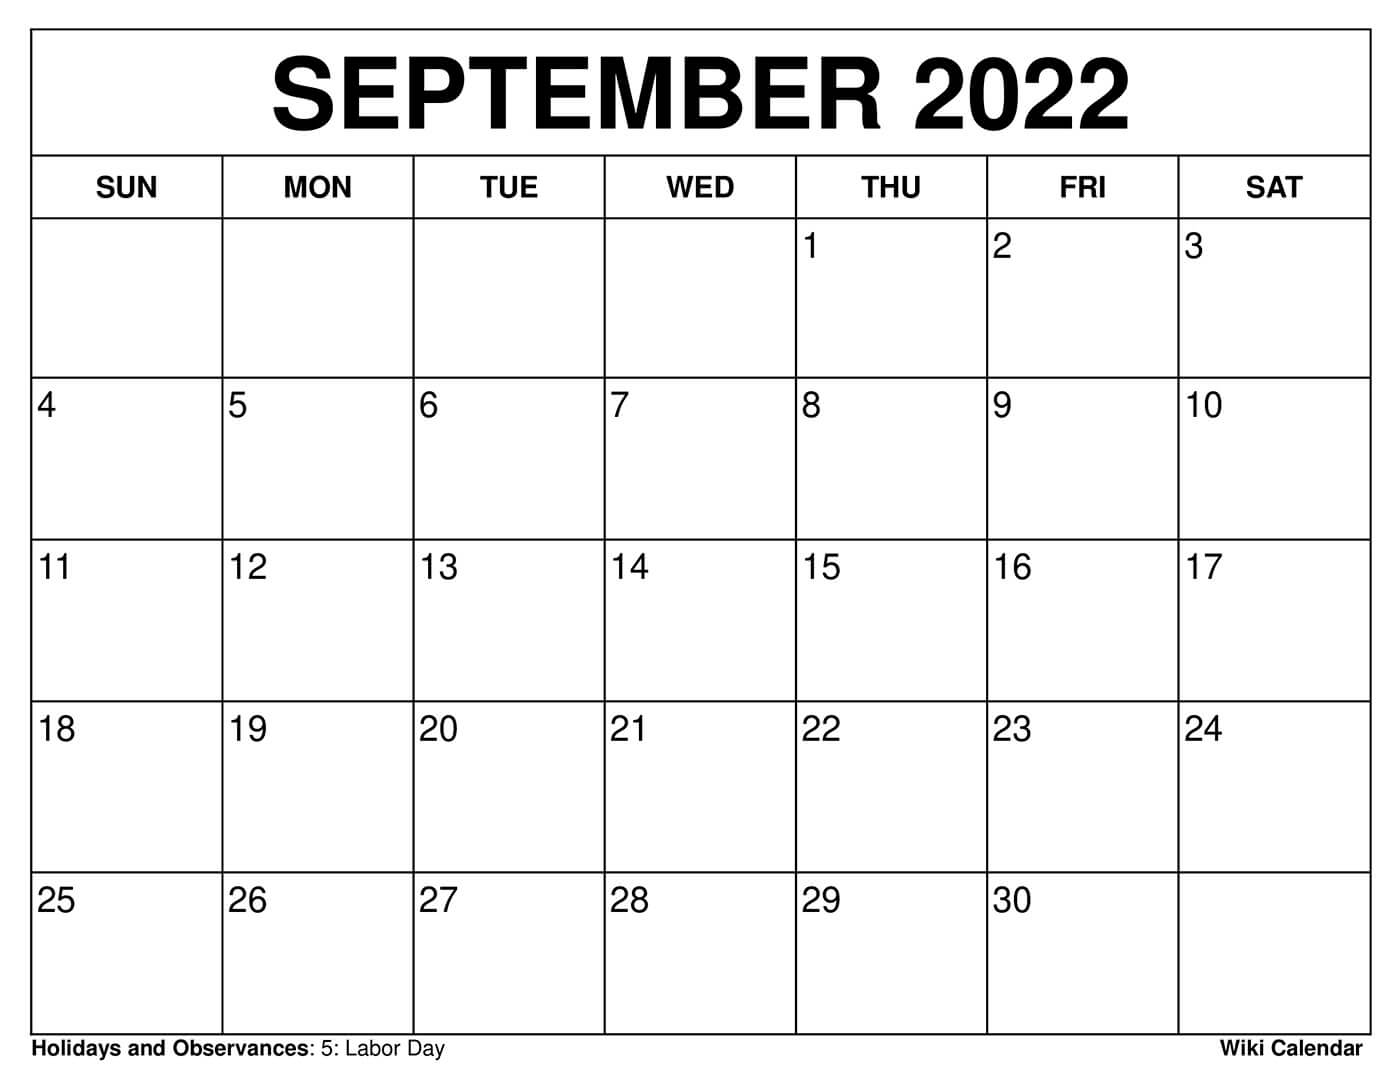 September 2022 Monthly Calendar Free Printable September 2022 Calendars - Wiki Calendar